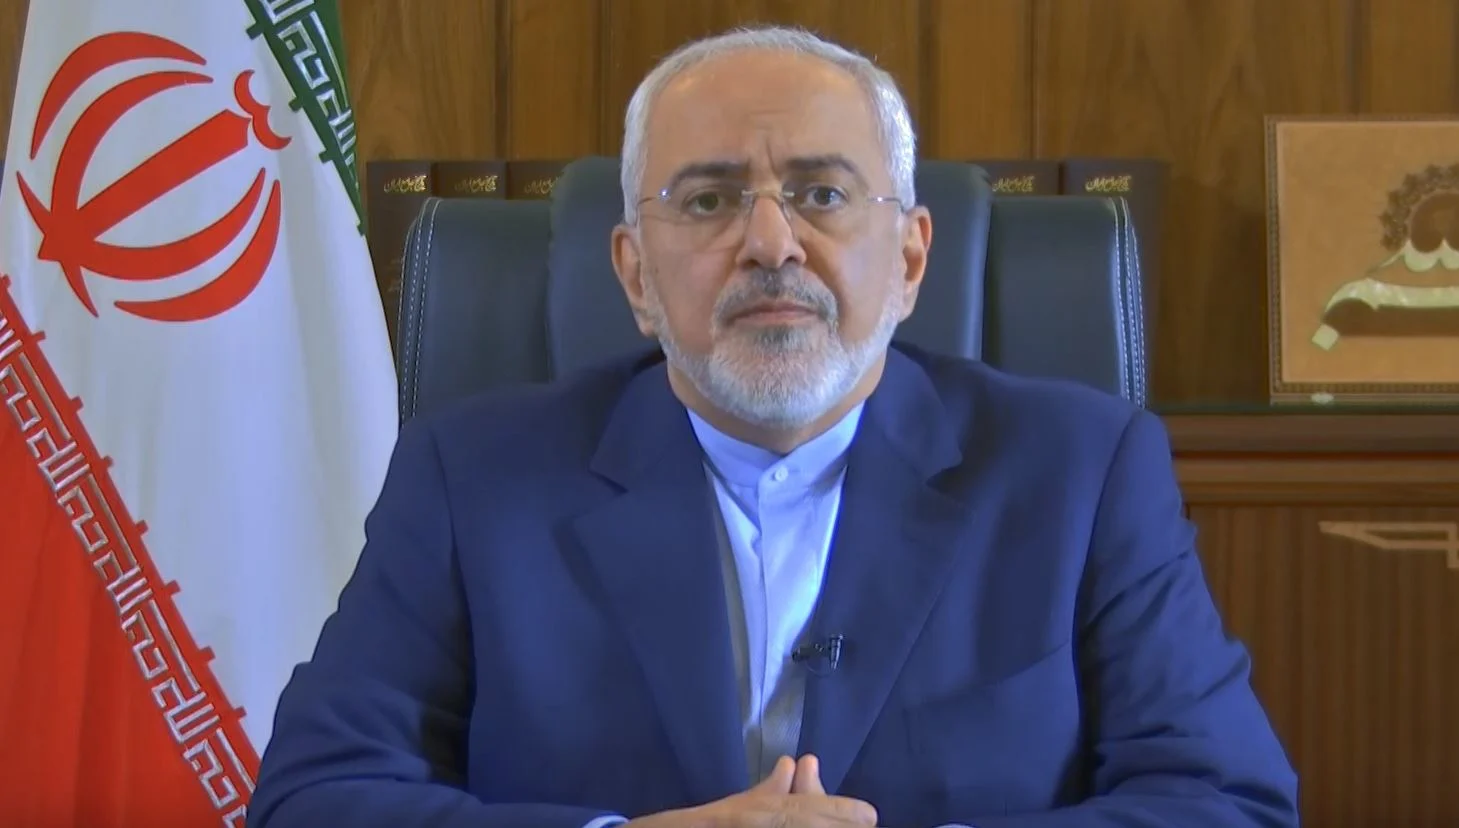 שר החוץ האיראני, מוחמד ג'וואד זריף